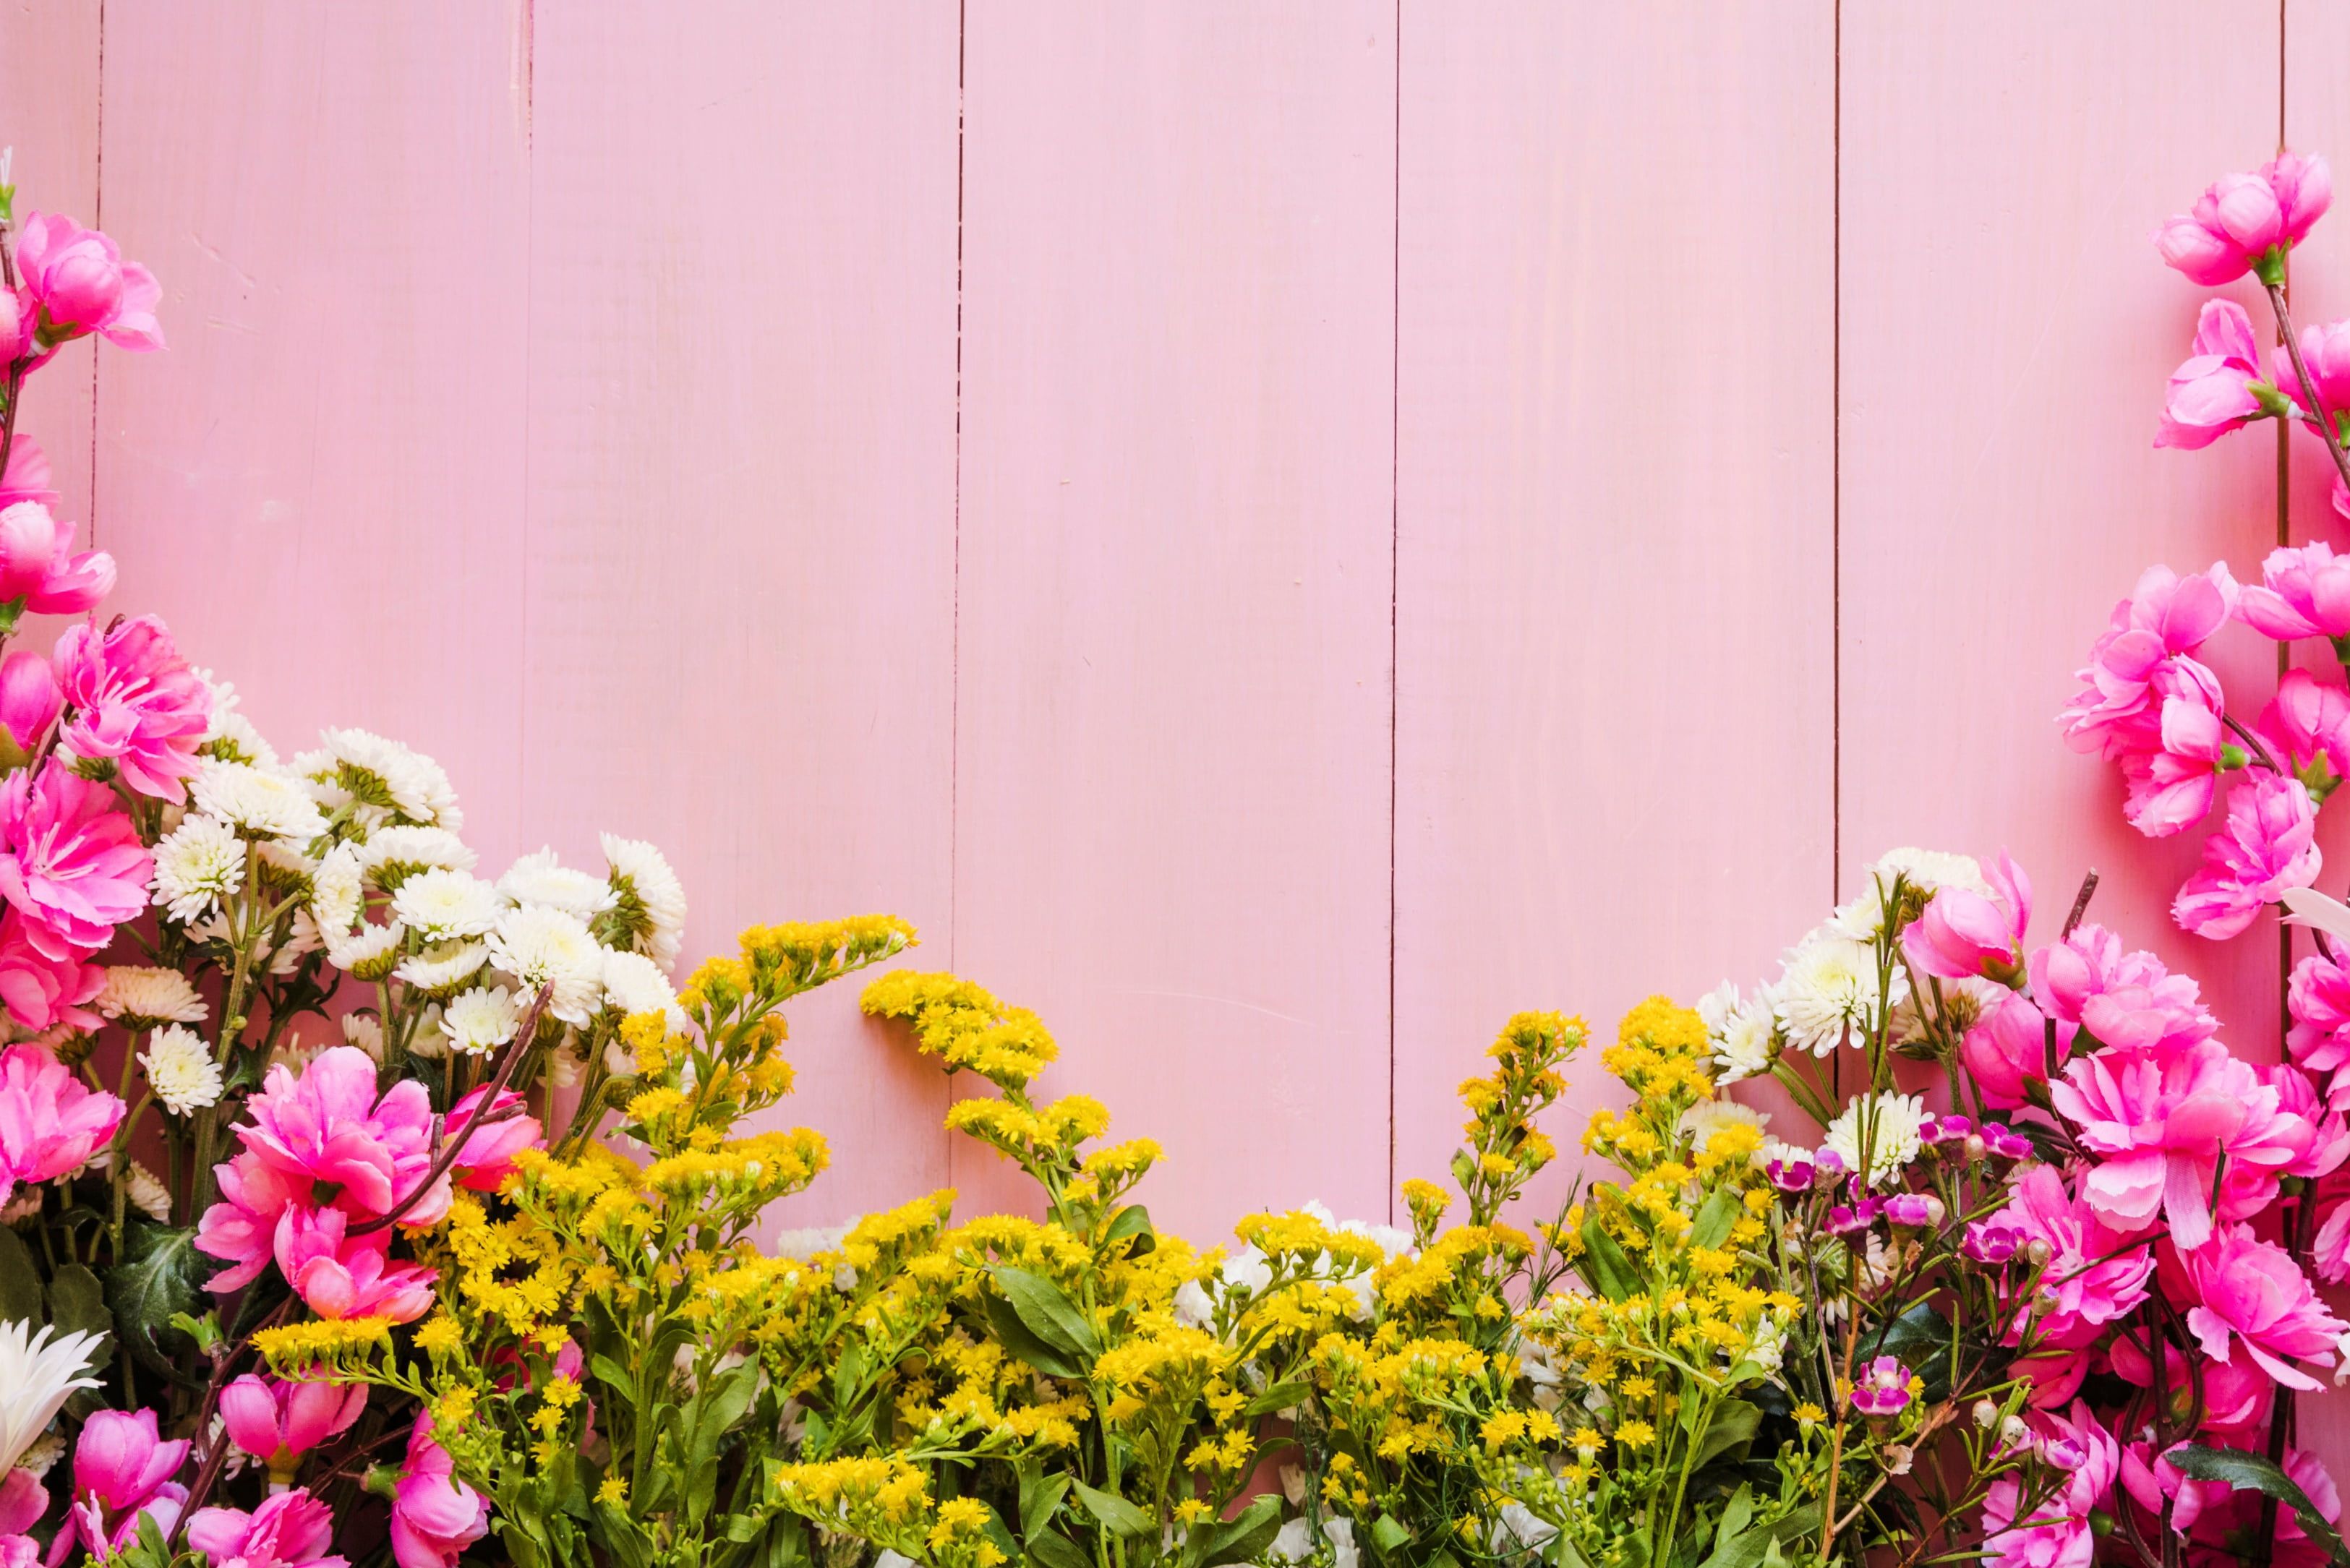 flowers #background #pink #pink #flowers #background #wooden #spring #floral K #wallpaper #h. Spring flowers background, Flower wallpaper, Pink flowering trees